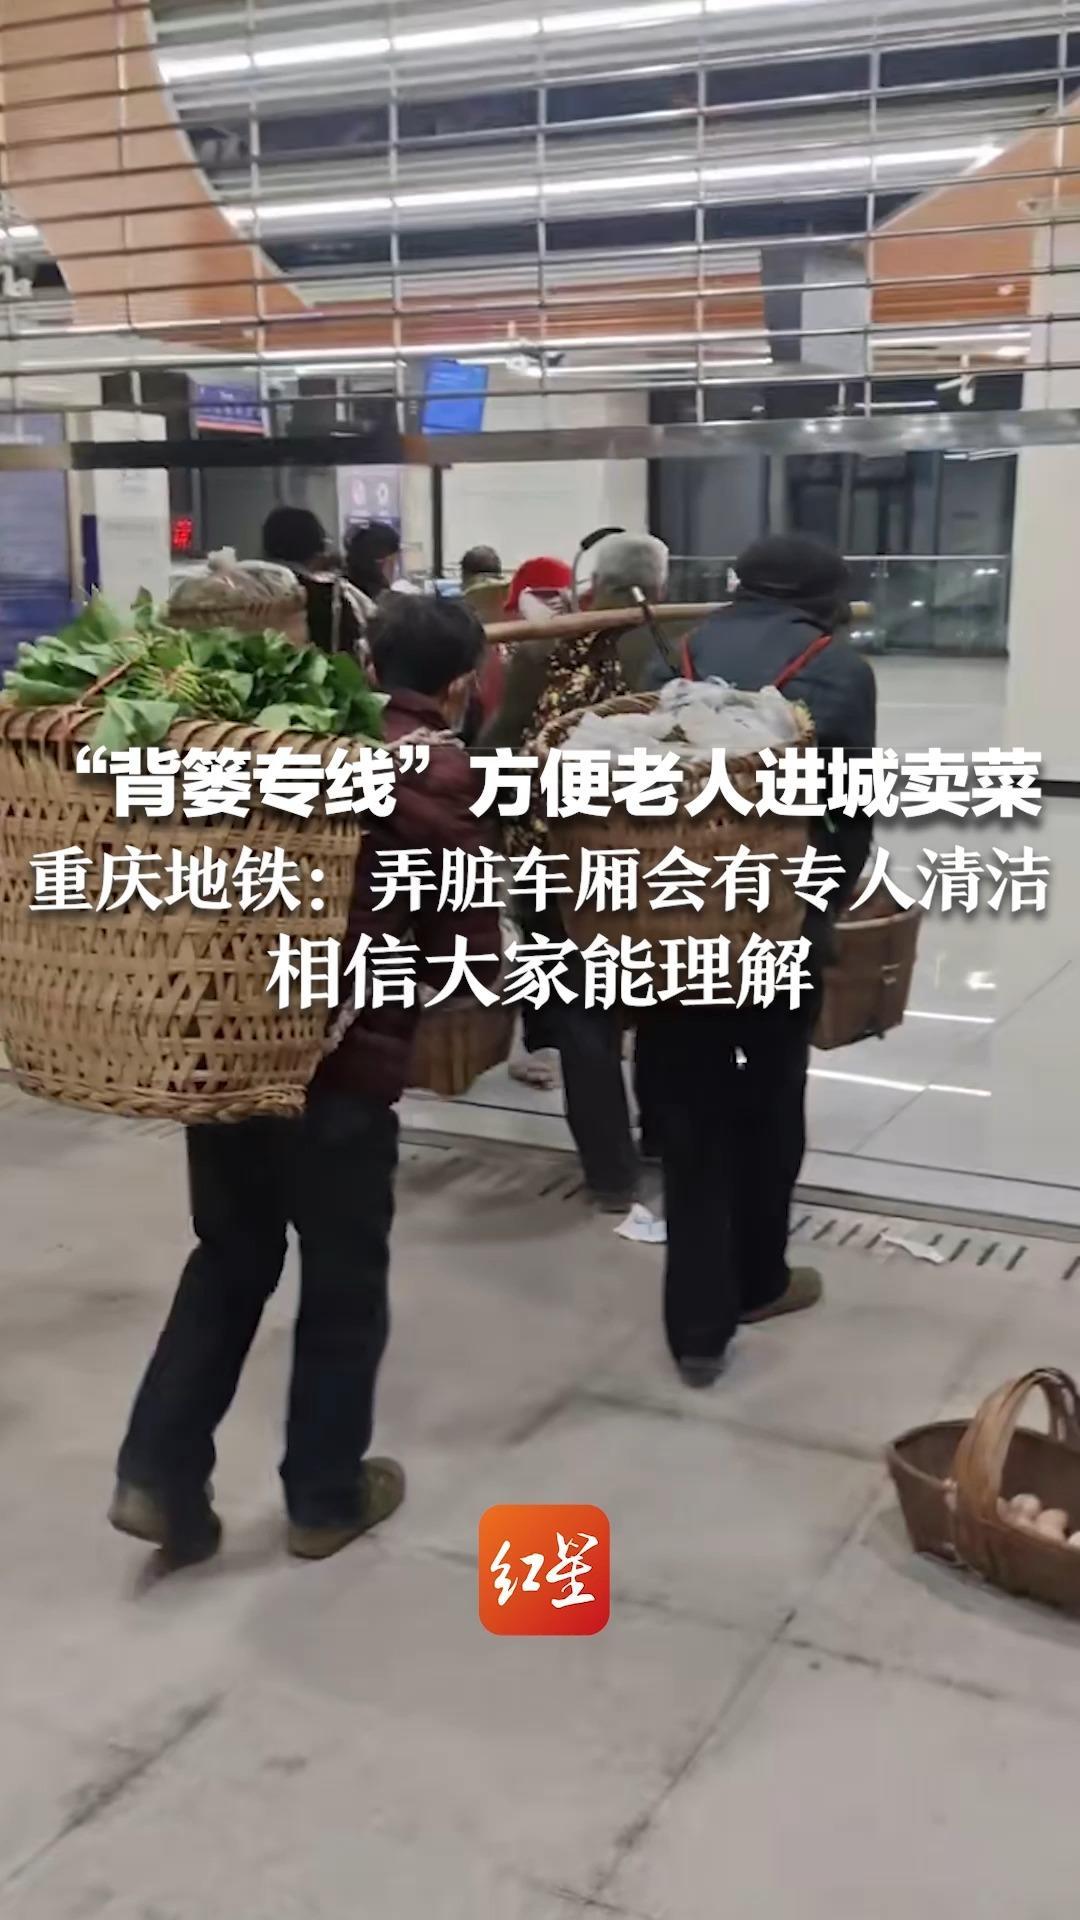 “背篓专线”方便老人进城卖菜 重庆地铁：弄脏车厢会有专人清洁 相信大家能理解